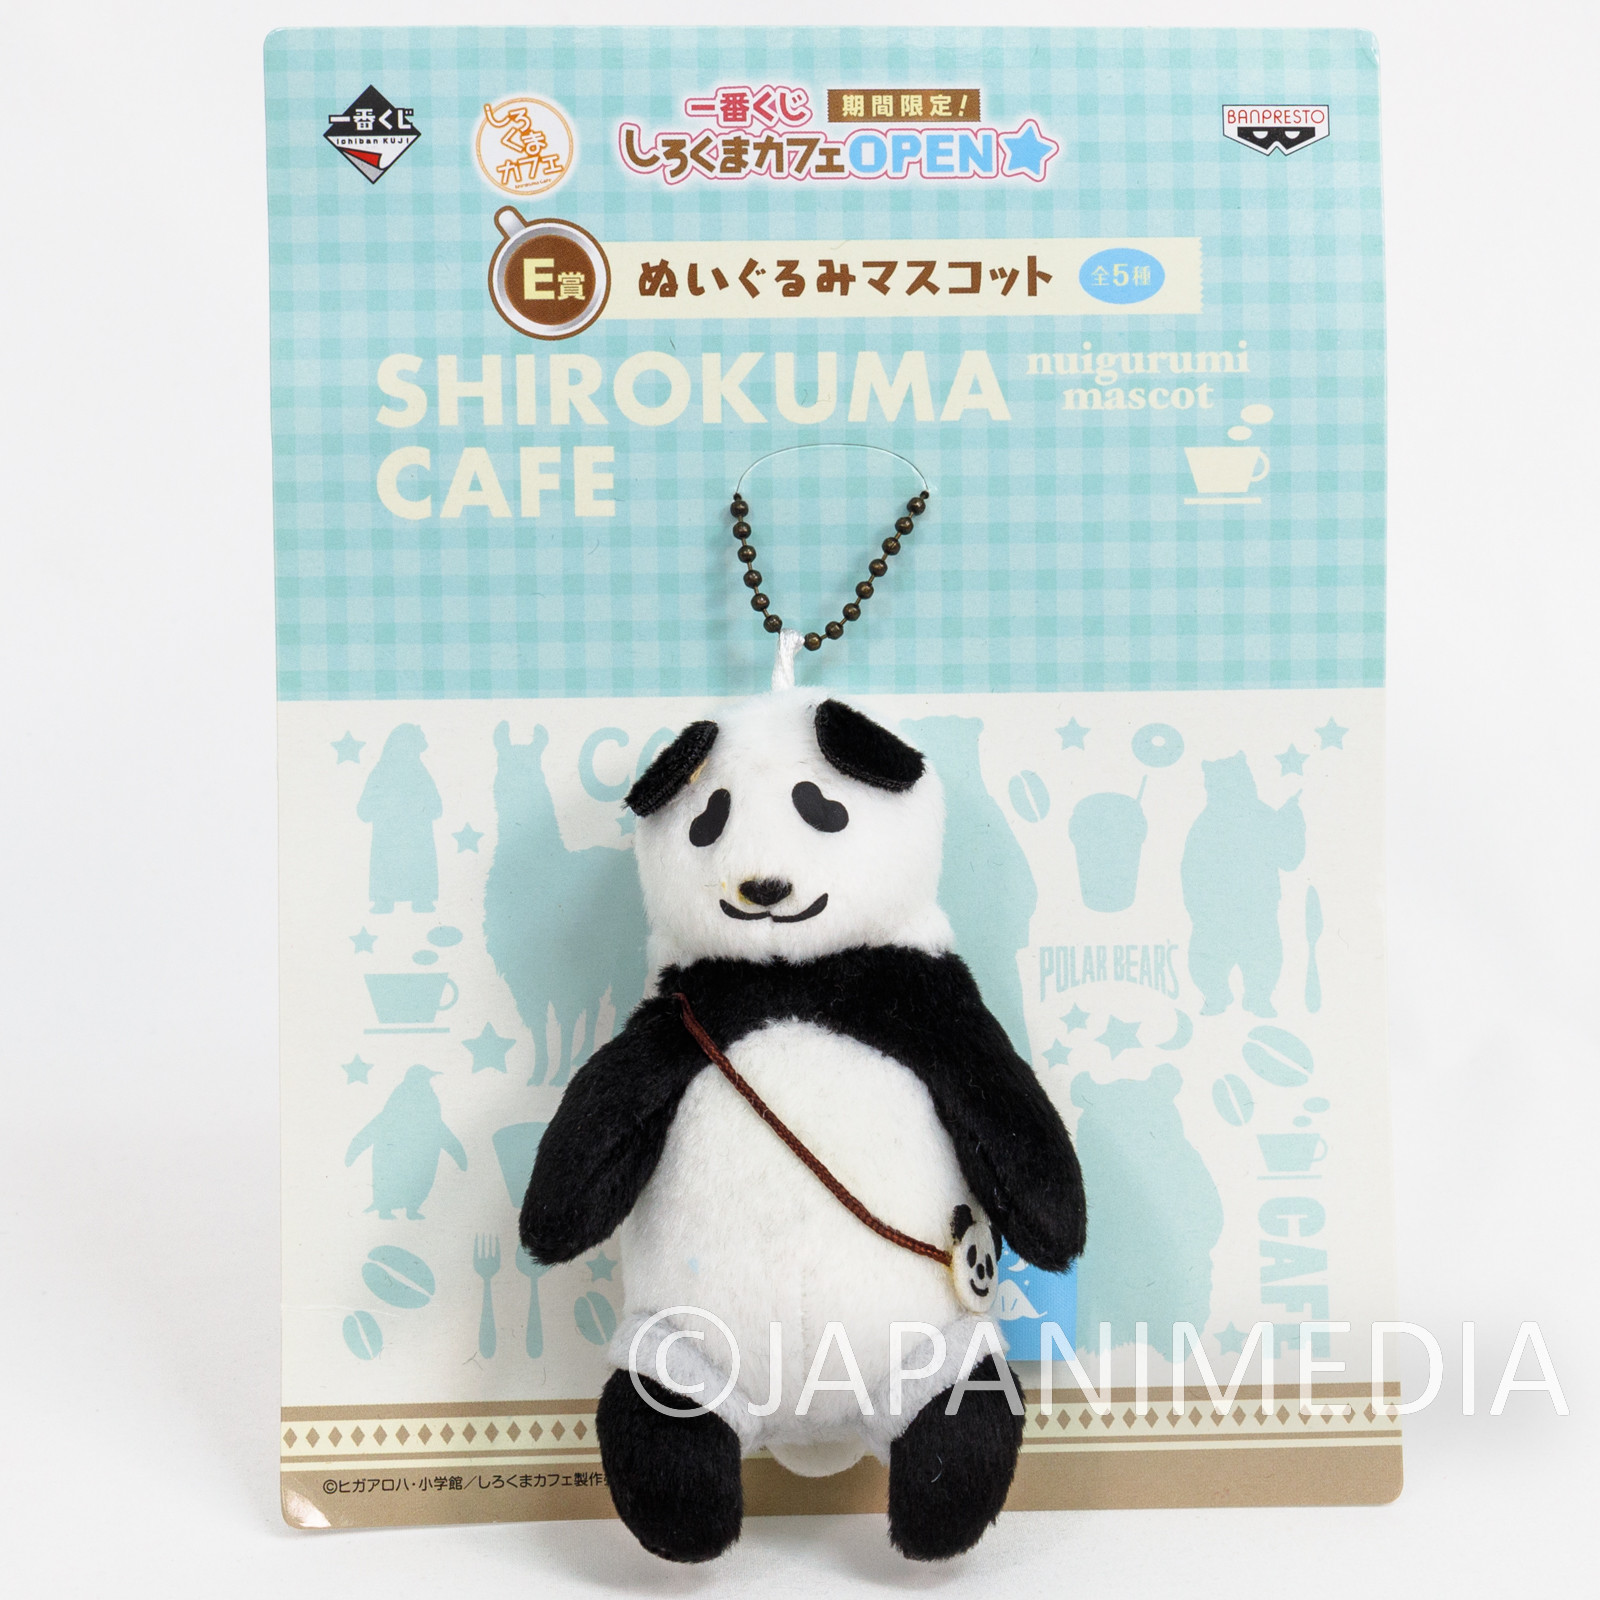 Shirokuma Cafe Polar Bear Panda kun Plush Doll Mascot Ball Chain Ichiban Kuji JAPAN ANIME